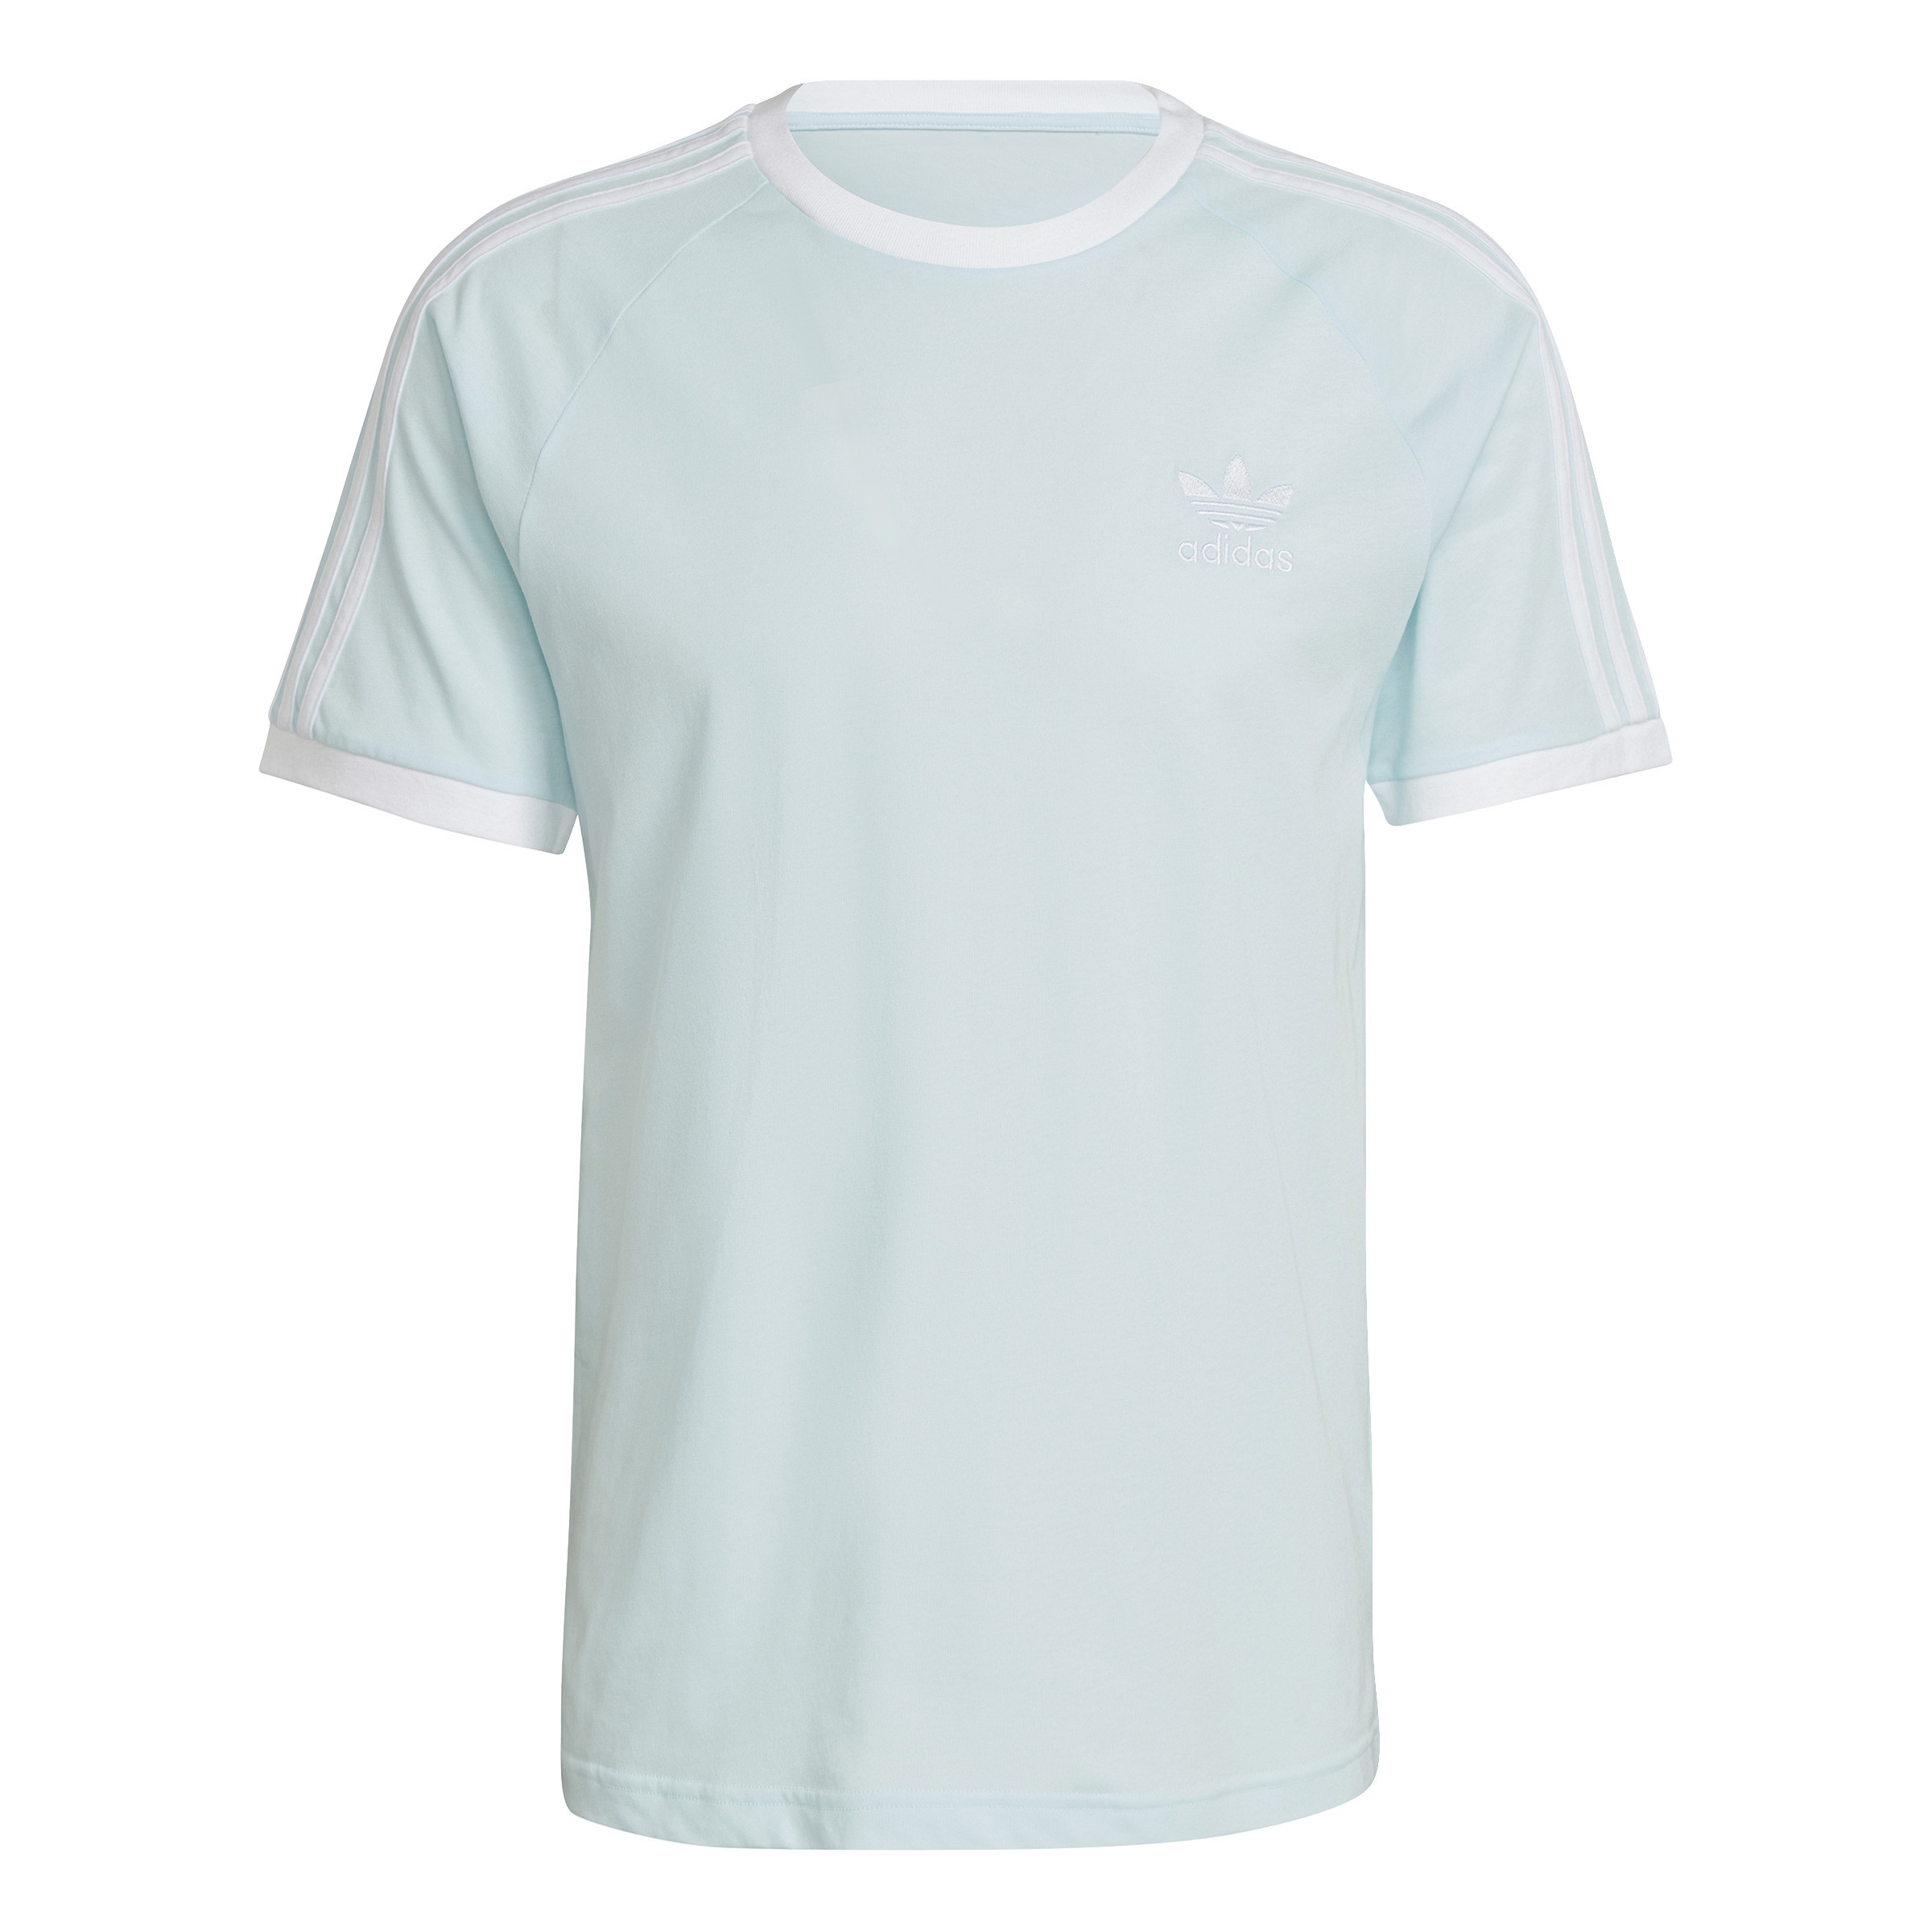 Adidas - T-shirt adicolor, Azzurro, large image number 0